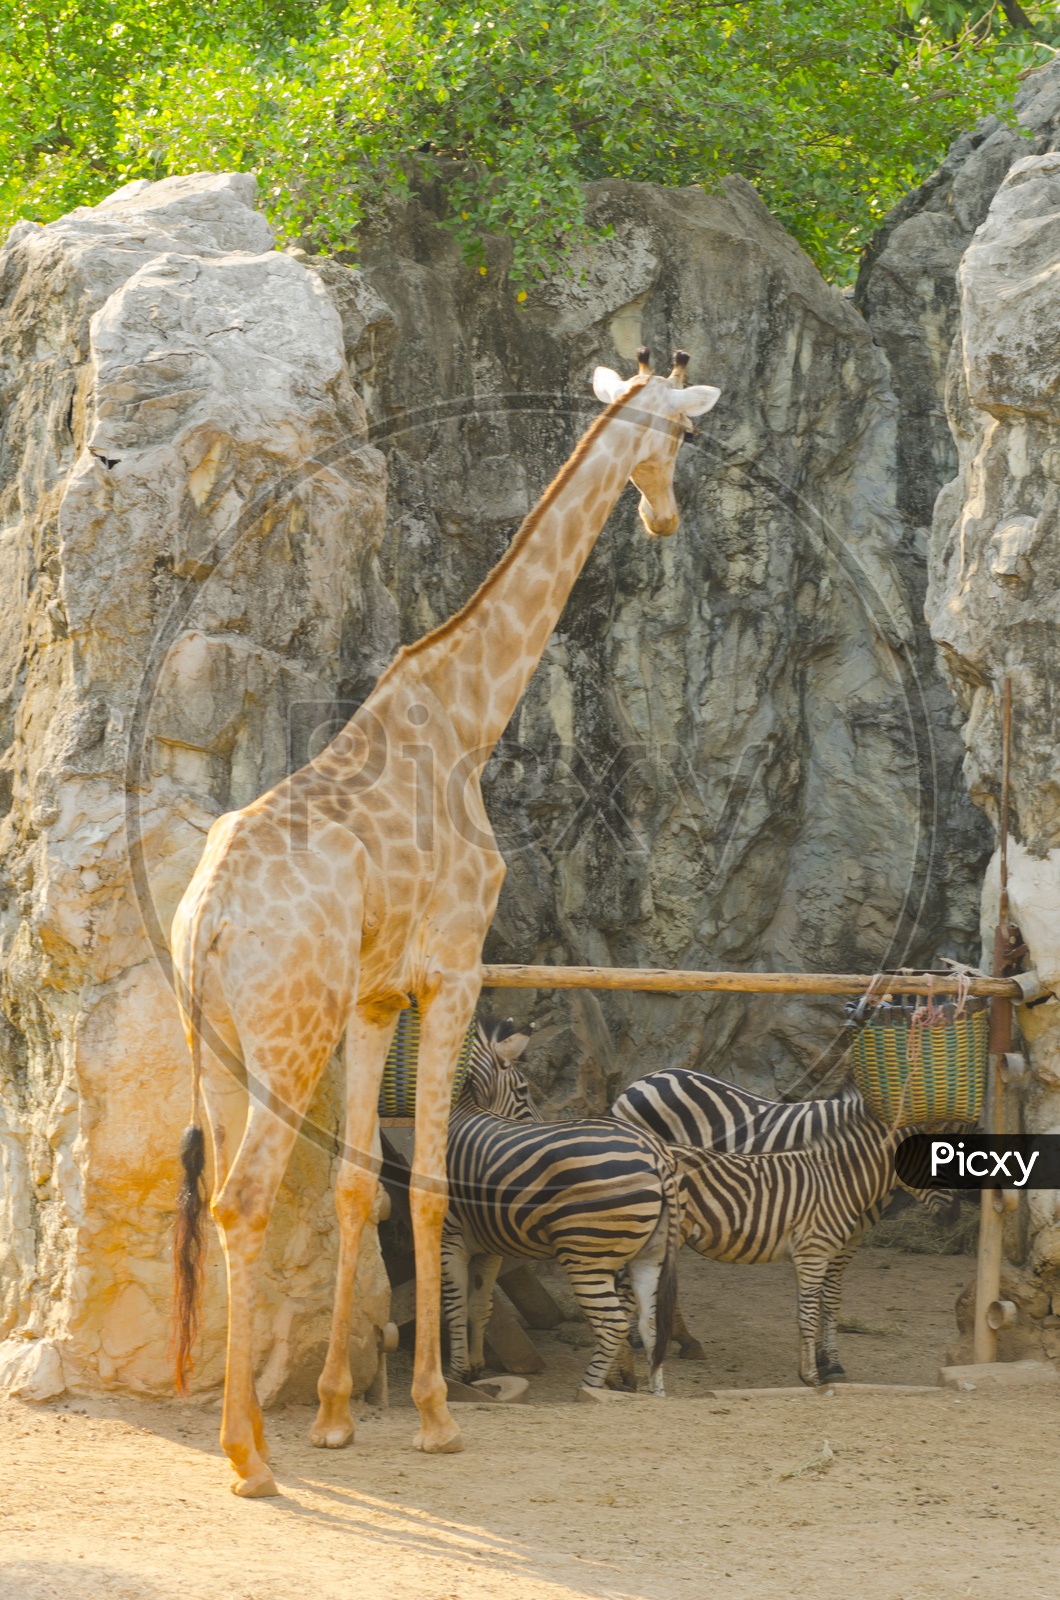 Giraffe  and Zebra In a Zoo